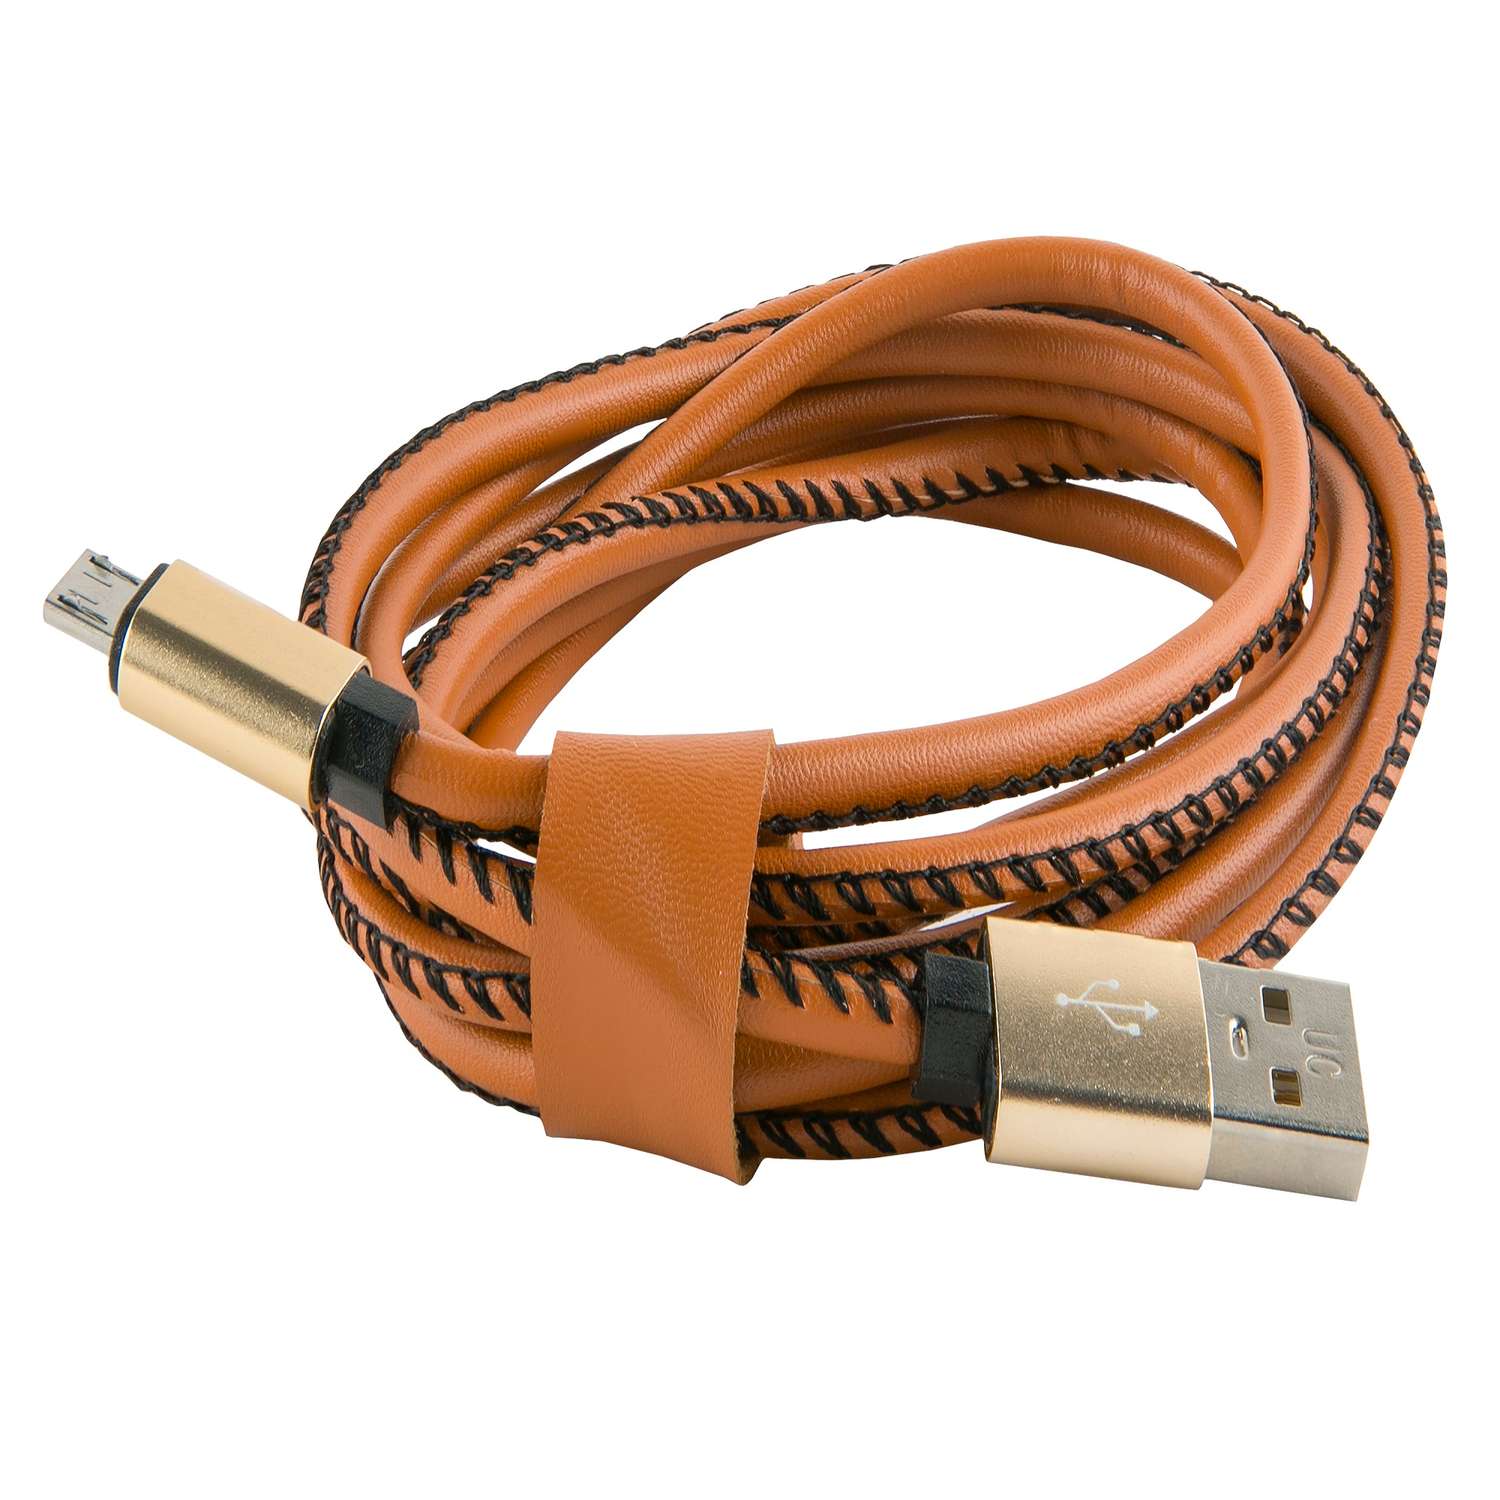 Дата-кабель Red line USB - Type-c (2 метра) Оплетка "экокожа", коричневый. Кабель red line